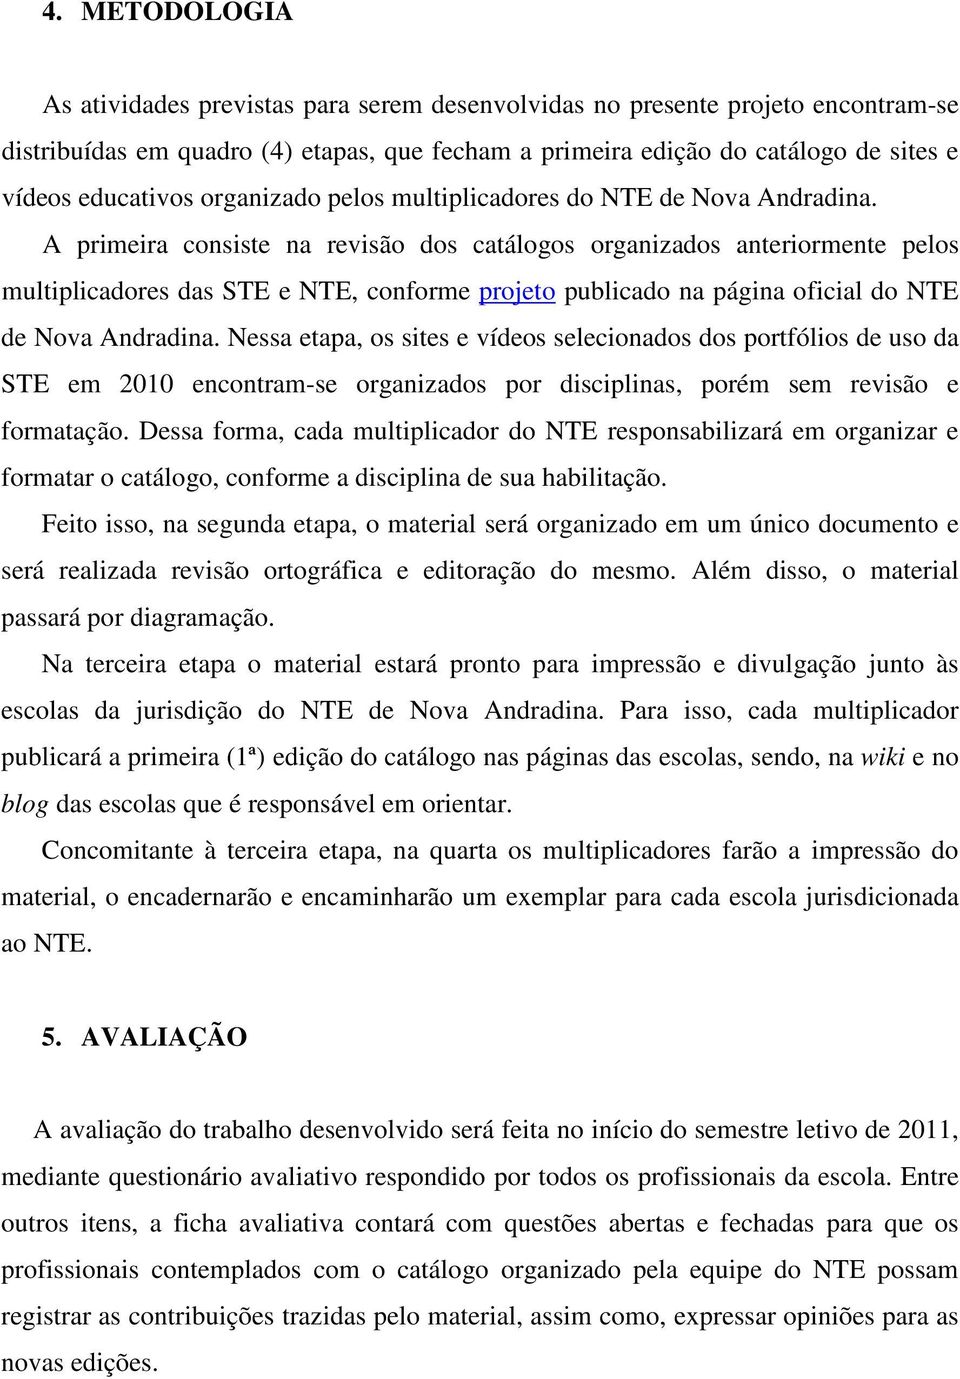 A primeira consiste na revisão dos catálogos organizados anteriormente pelos multiplicadores das STE e NTE, conforme projeto publicado na página oficial do NTE de Nova Andradina.